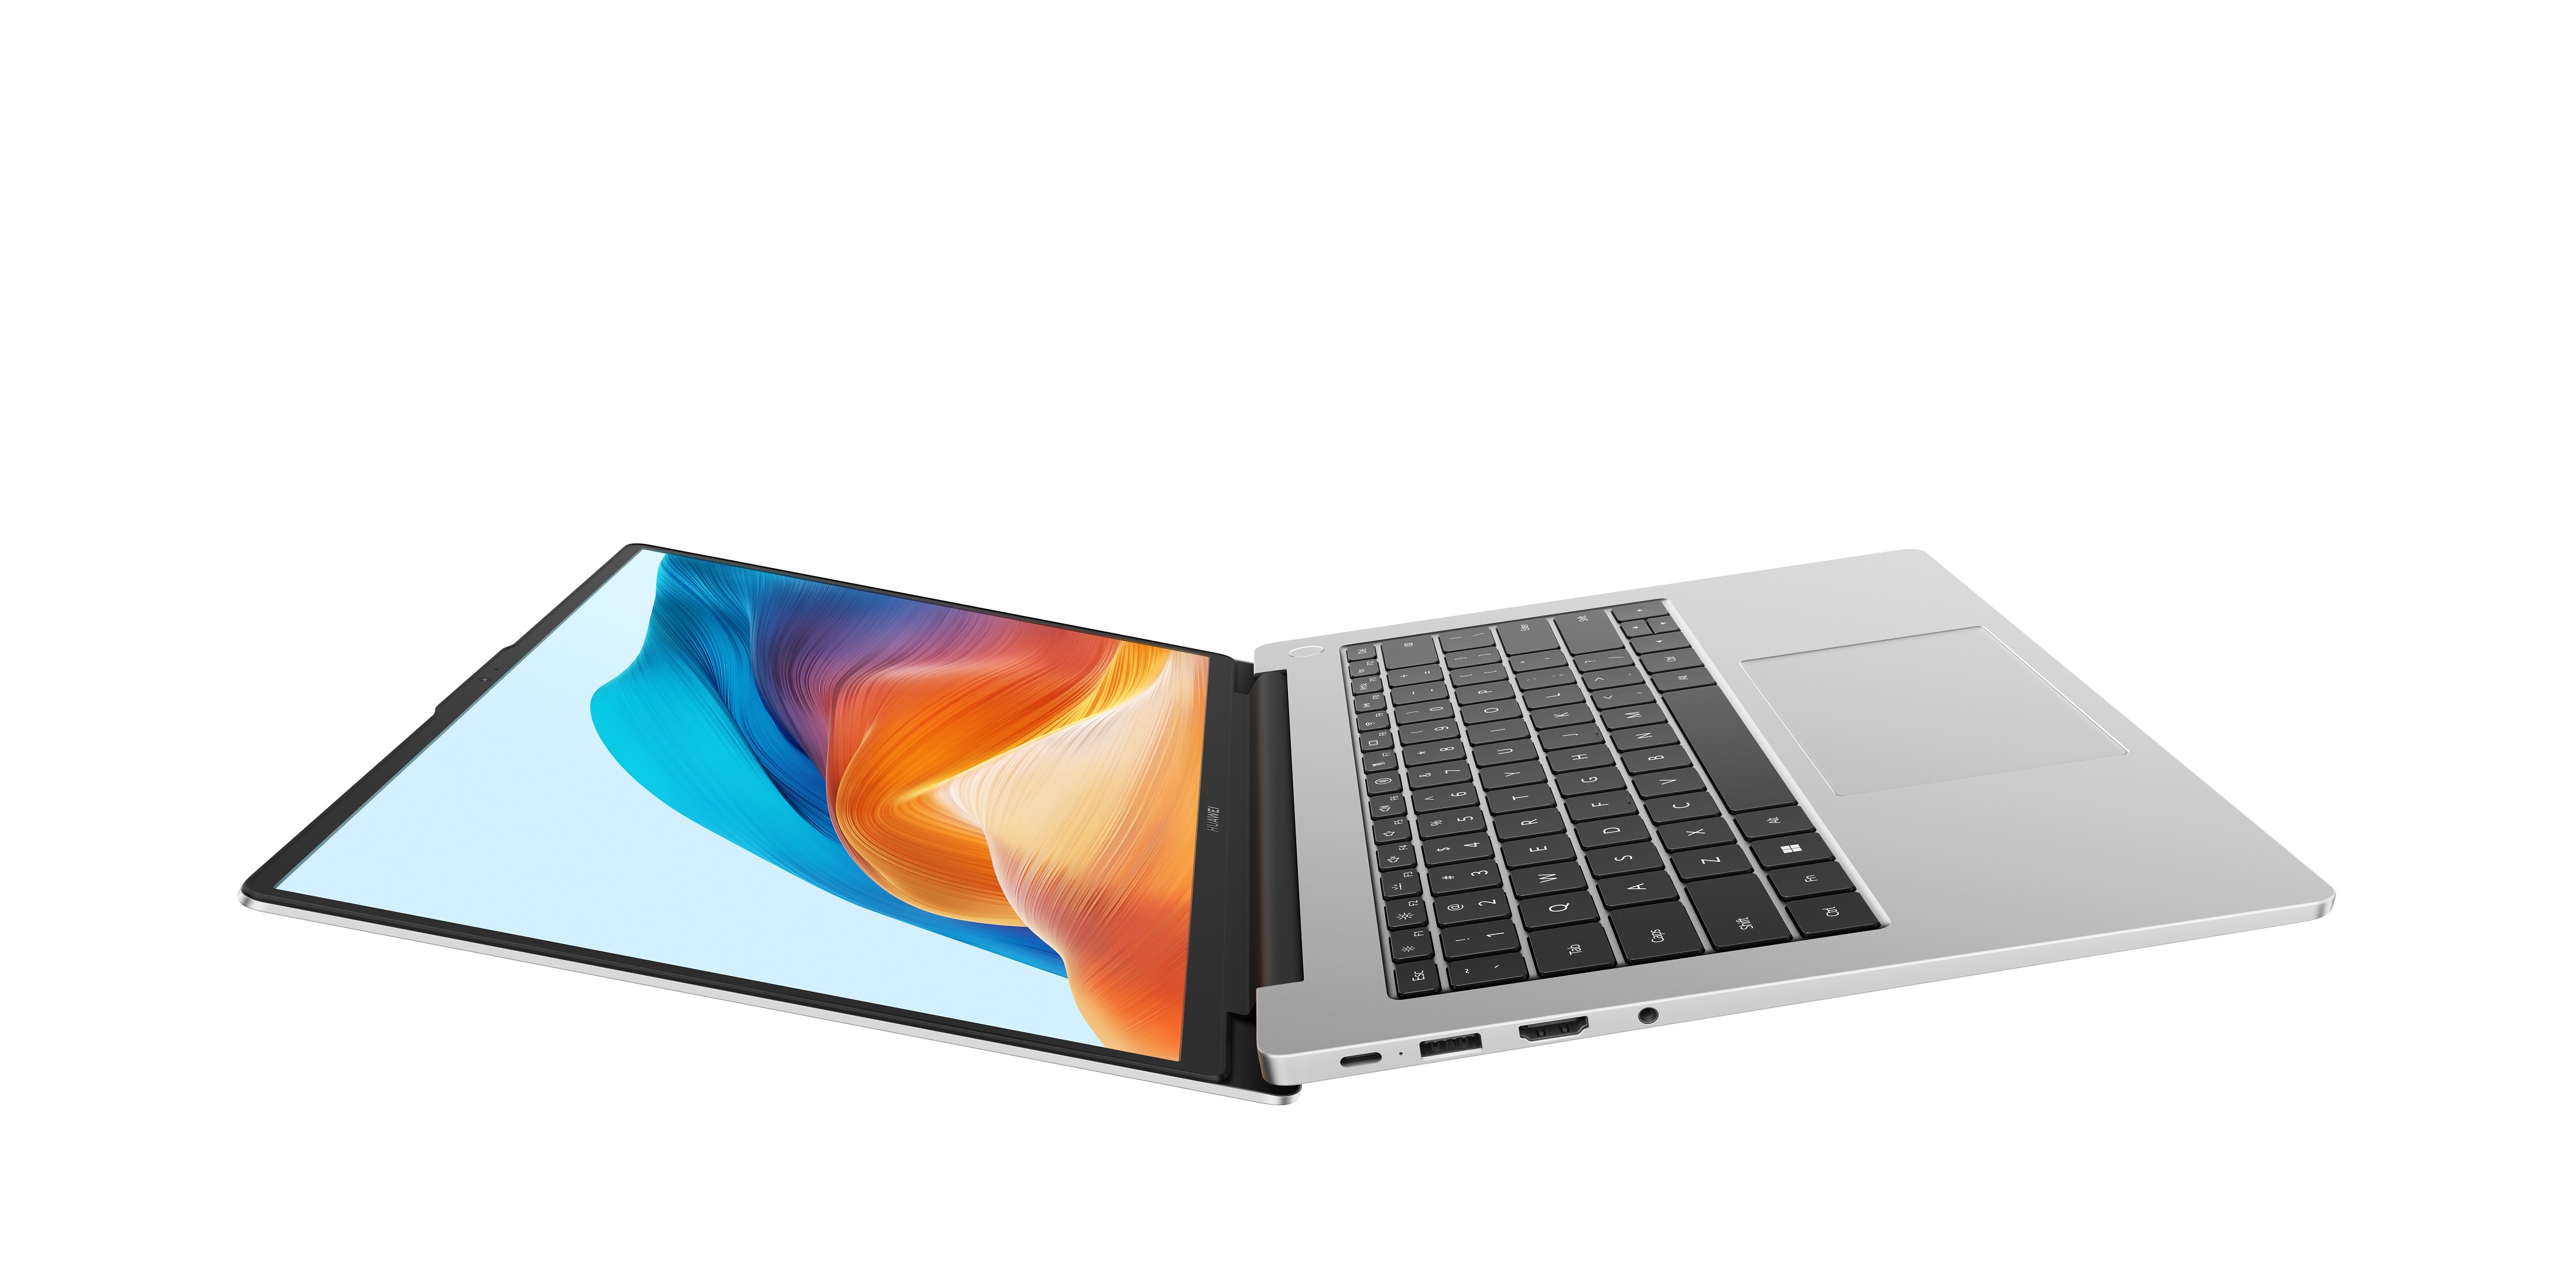 هواوي تكشف الستار عن ثلاثة منتجات جديدة: الحاسوبين المحمولين HUAWEI MateBook X Pro و HUAWEI MateBook D 14 والجهاز اللوحي HUAWEI MatePad 11